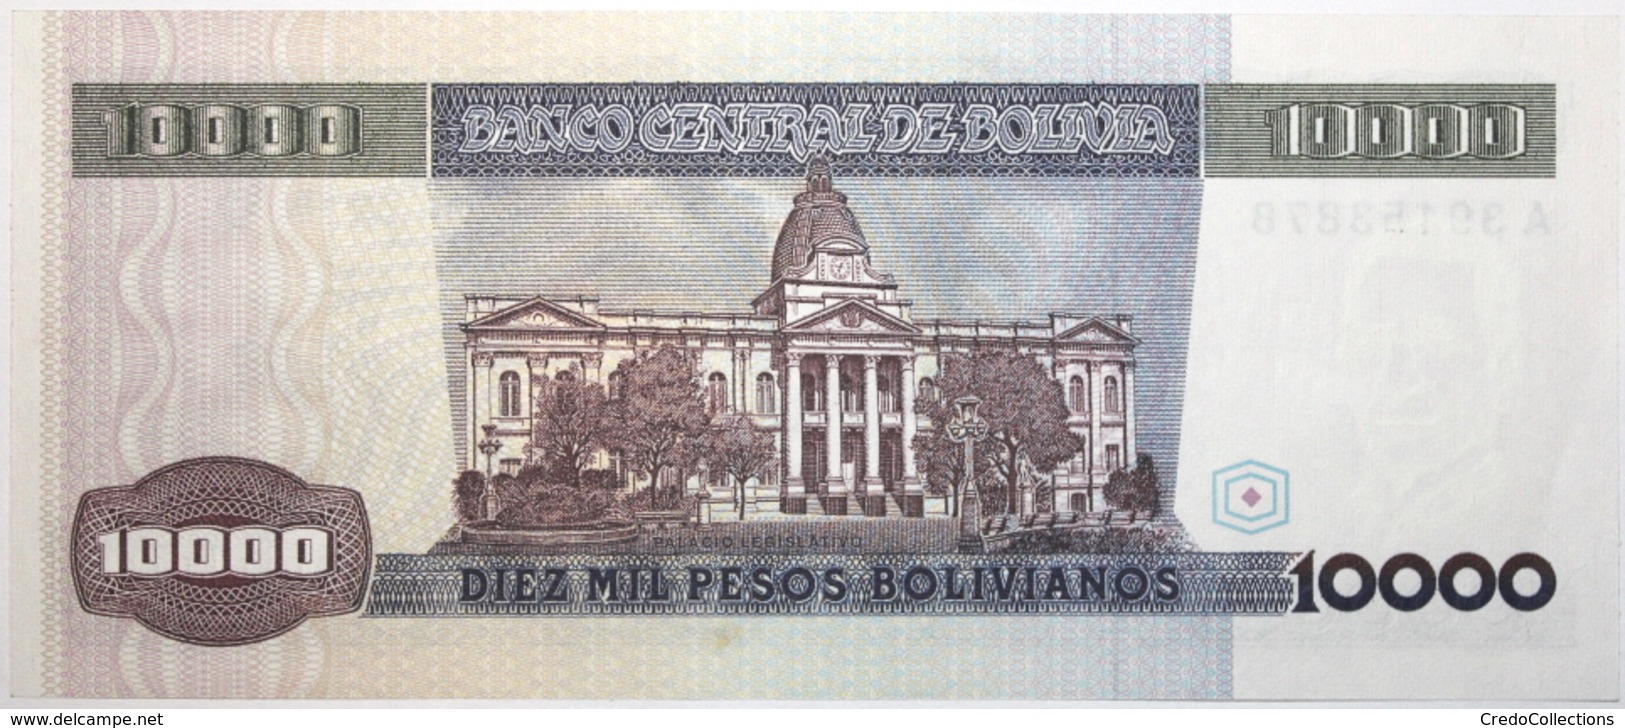 Bolivie - 10000 Pesos Bolivianos - 1984 - PICK 169a - SPL - Bolivie